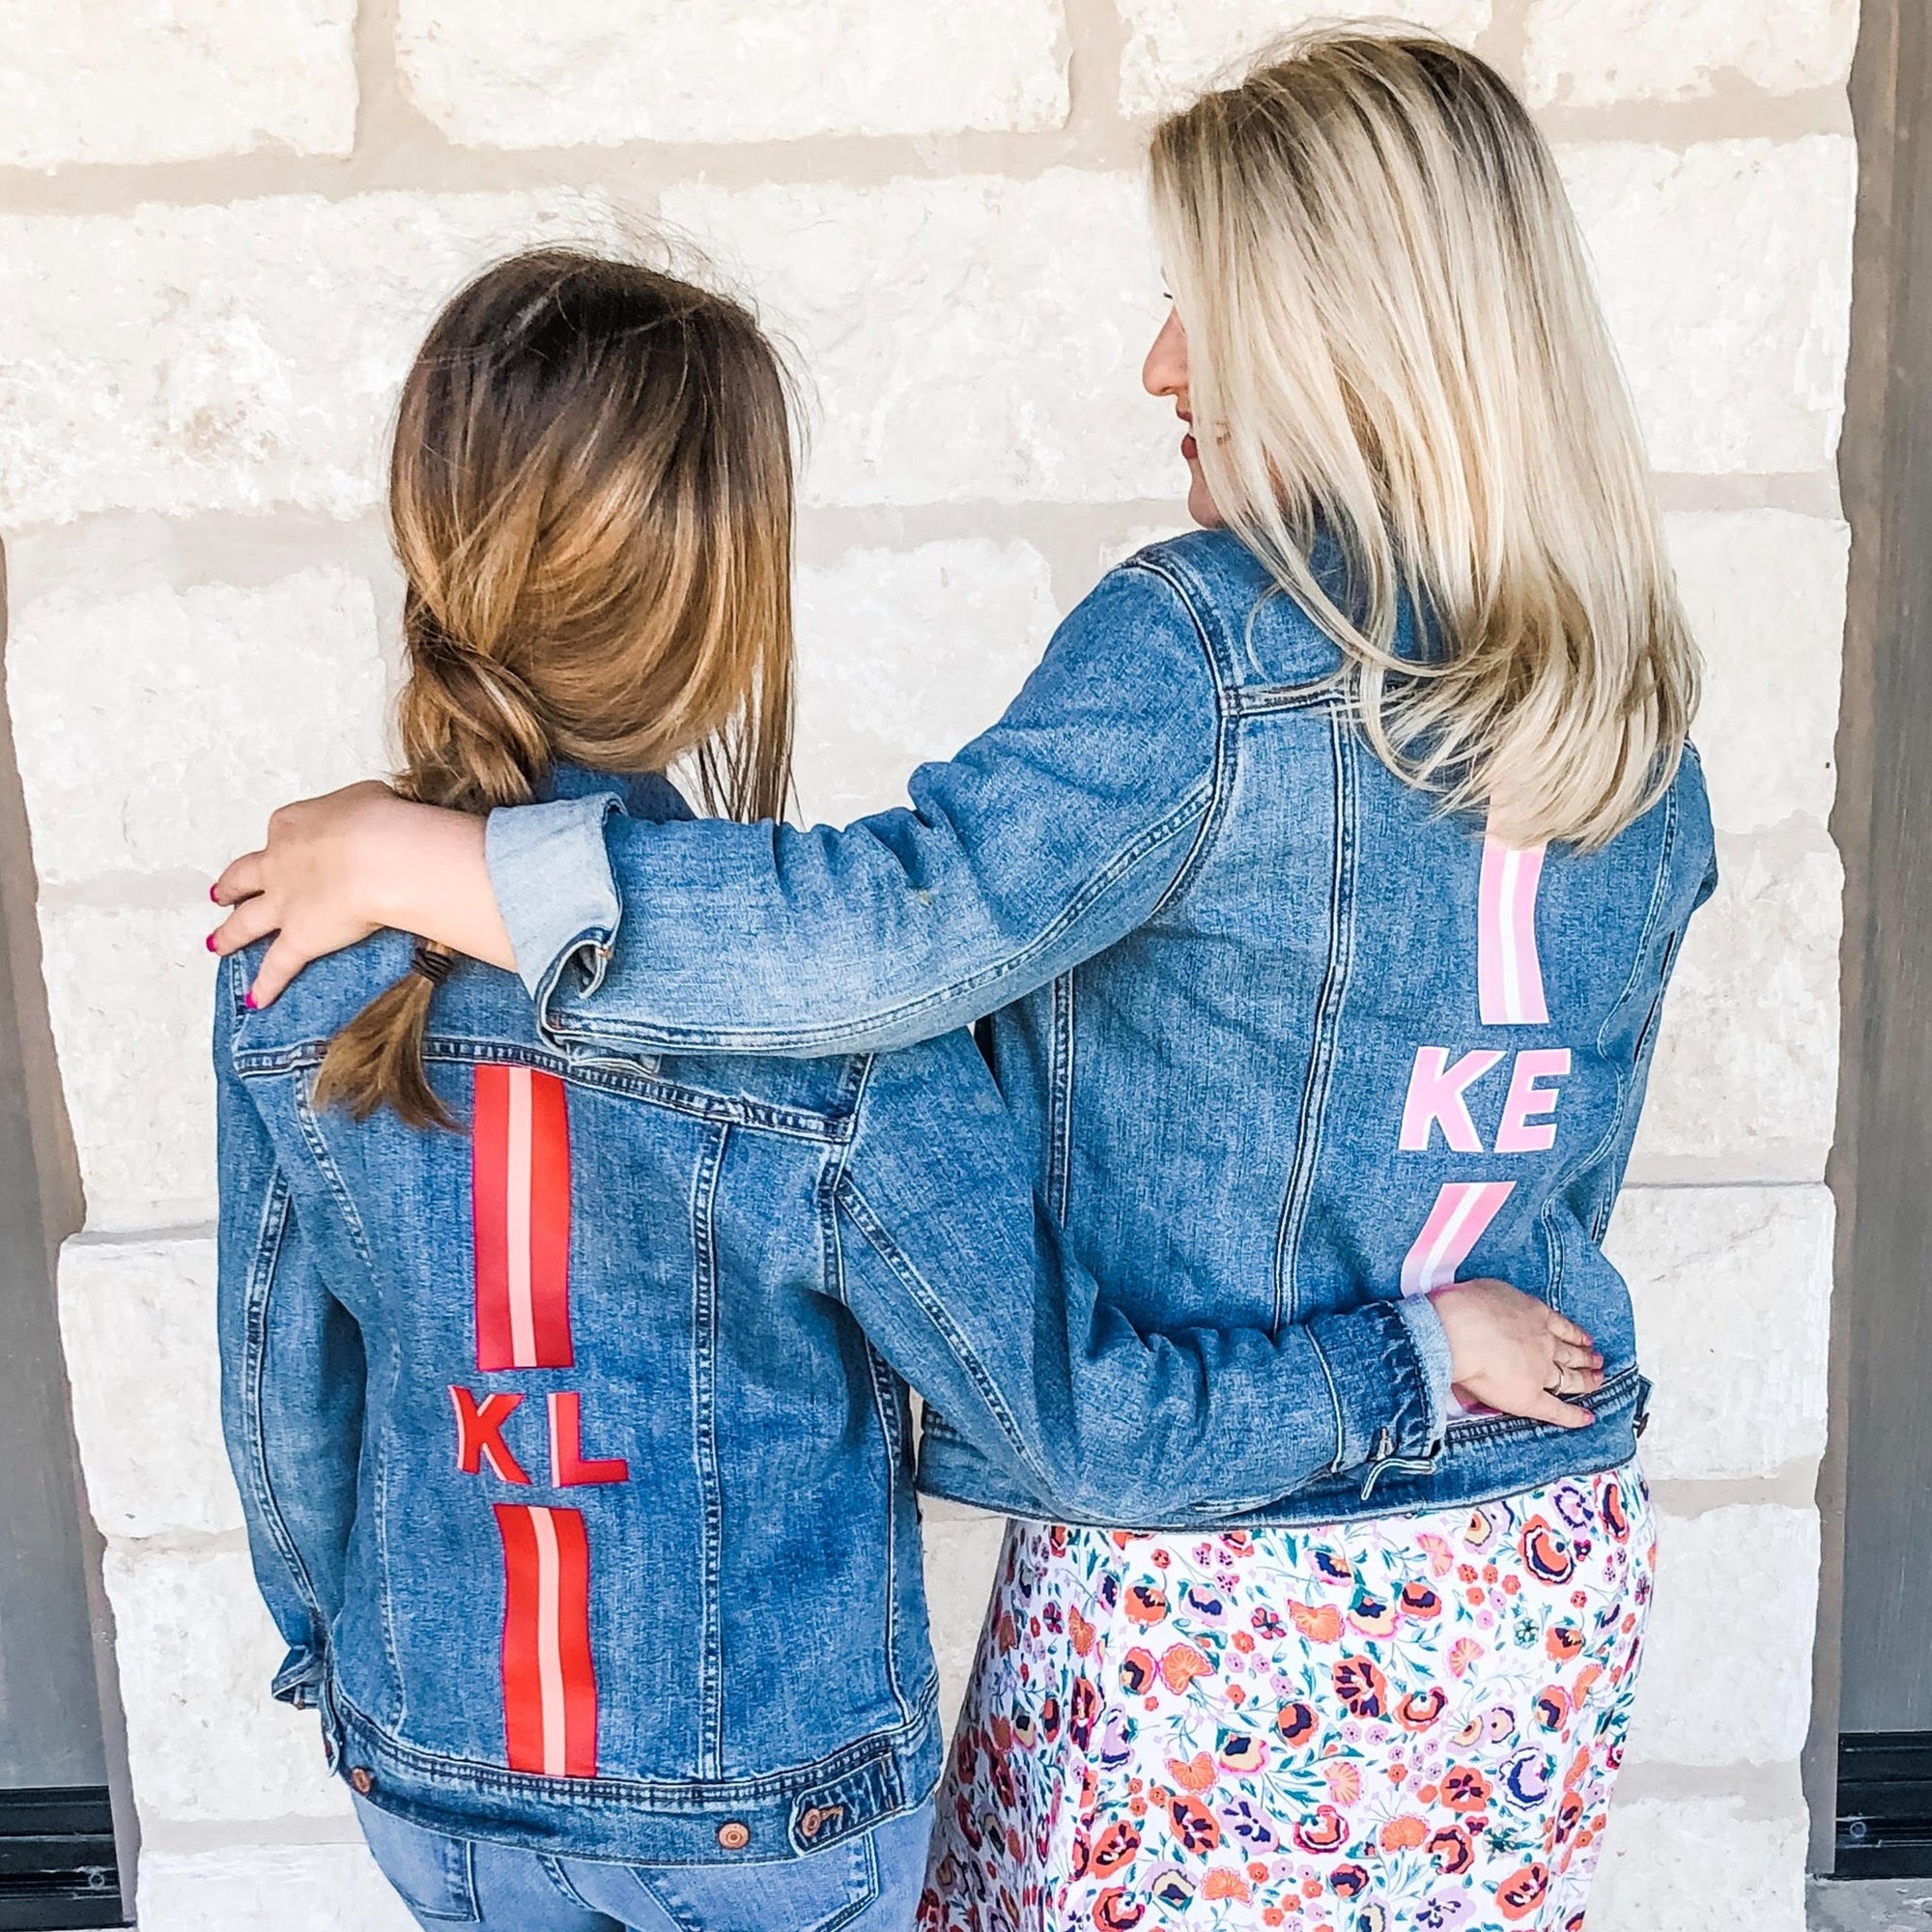 Two women wear customized denim jackets with stripes